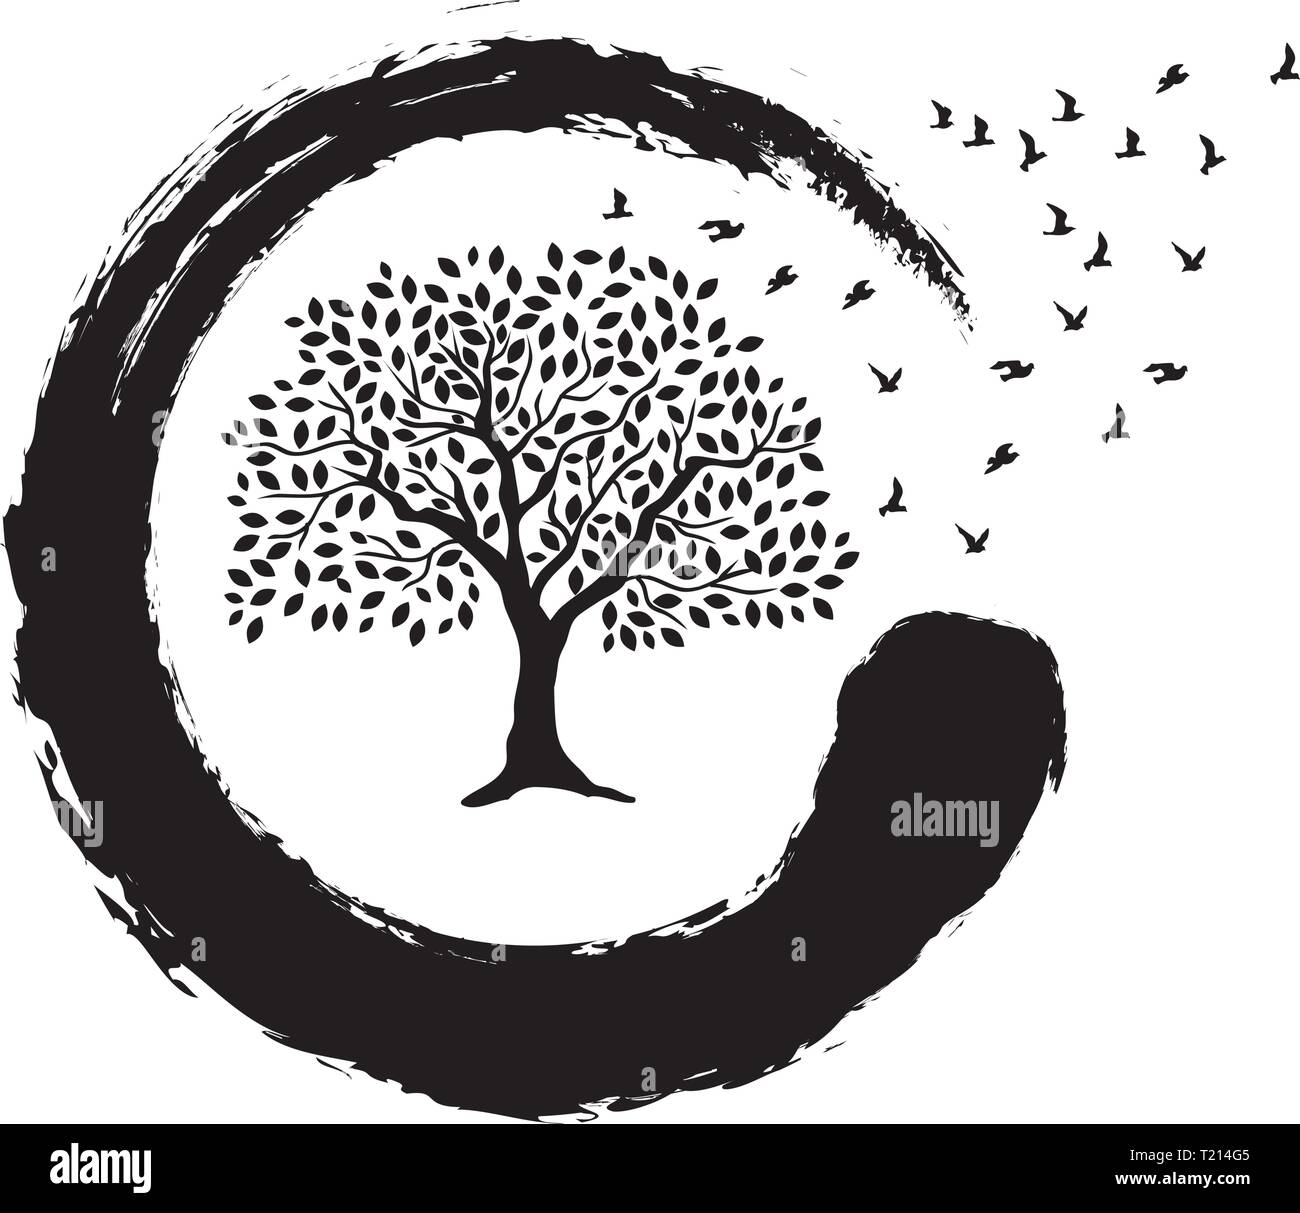 tree, birds and zen symbol Stock Vector